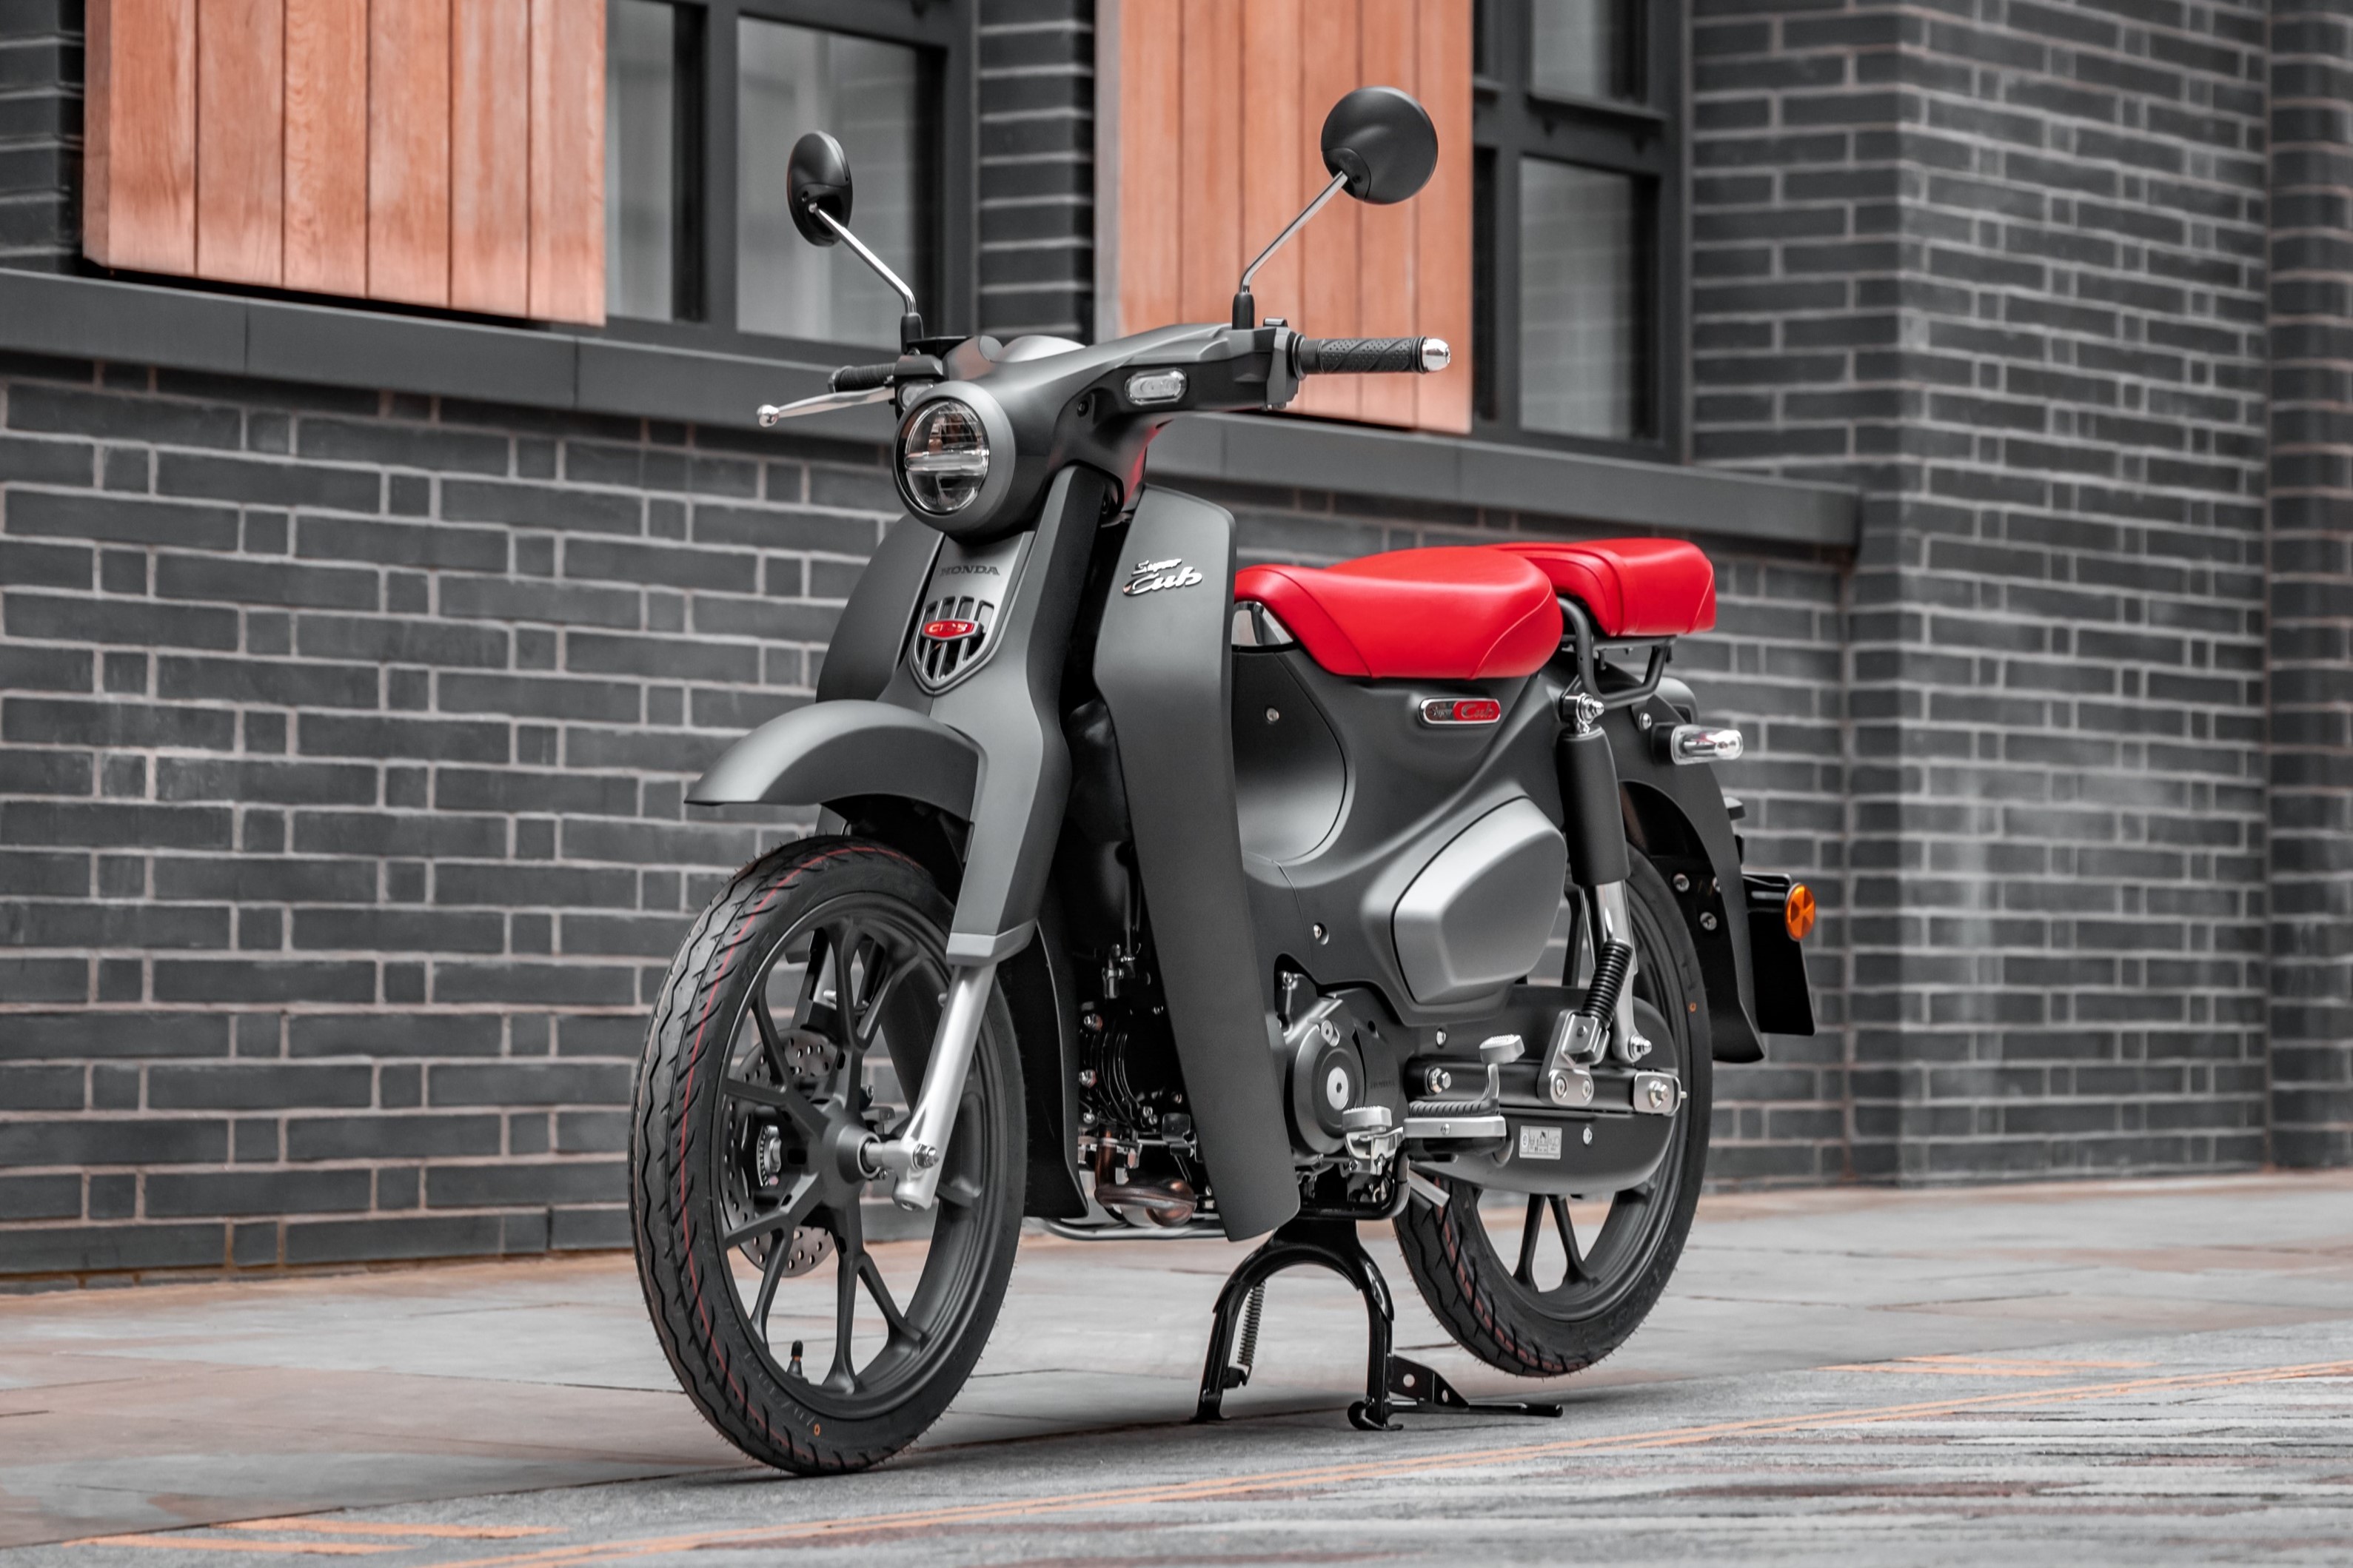 Xe Cub 50cc chính hãng đẹp giá tốt nhất 2021 tại TpHCM